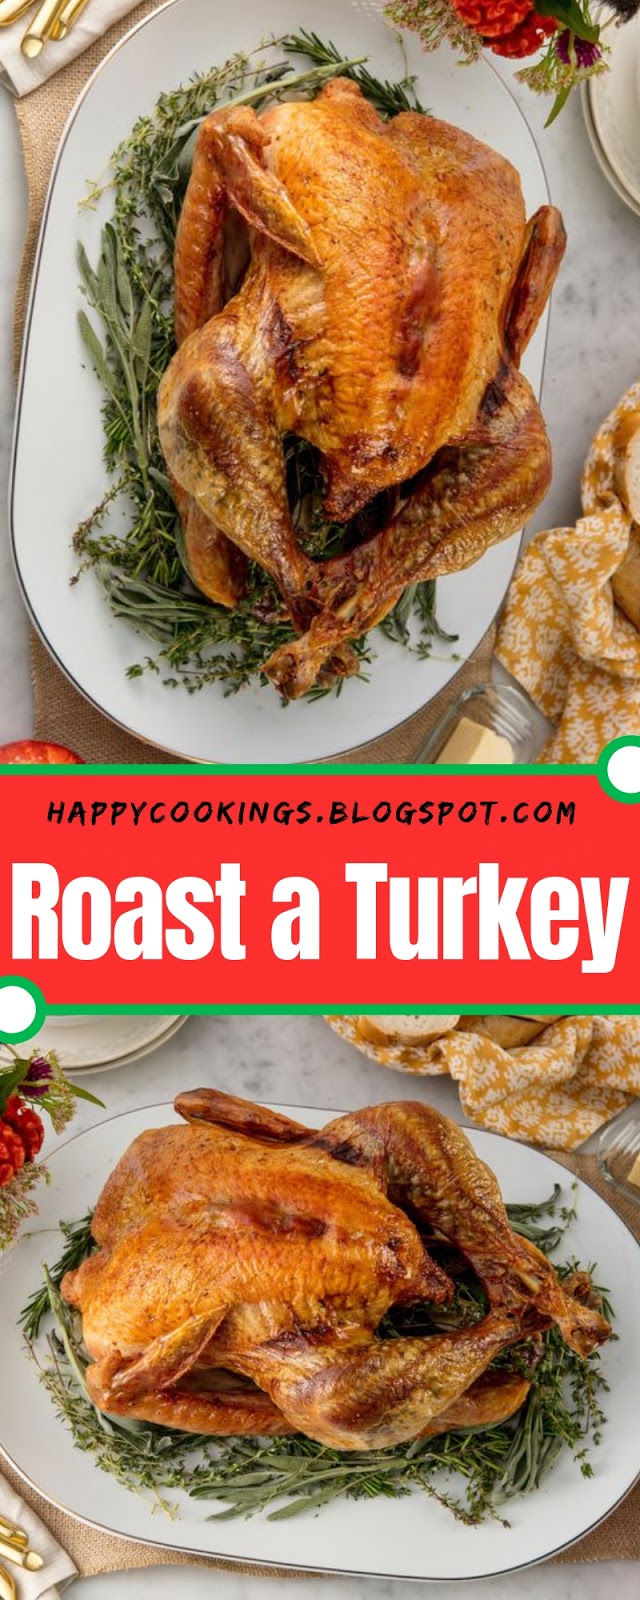 Roast a Turkey #Christmas #Roast